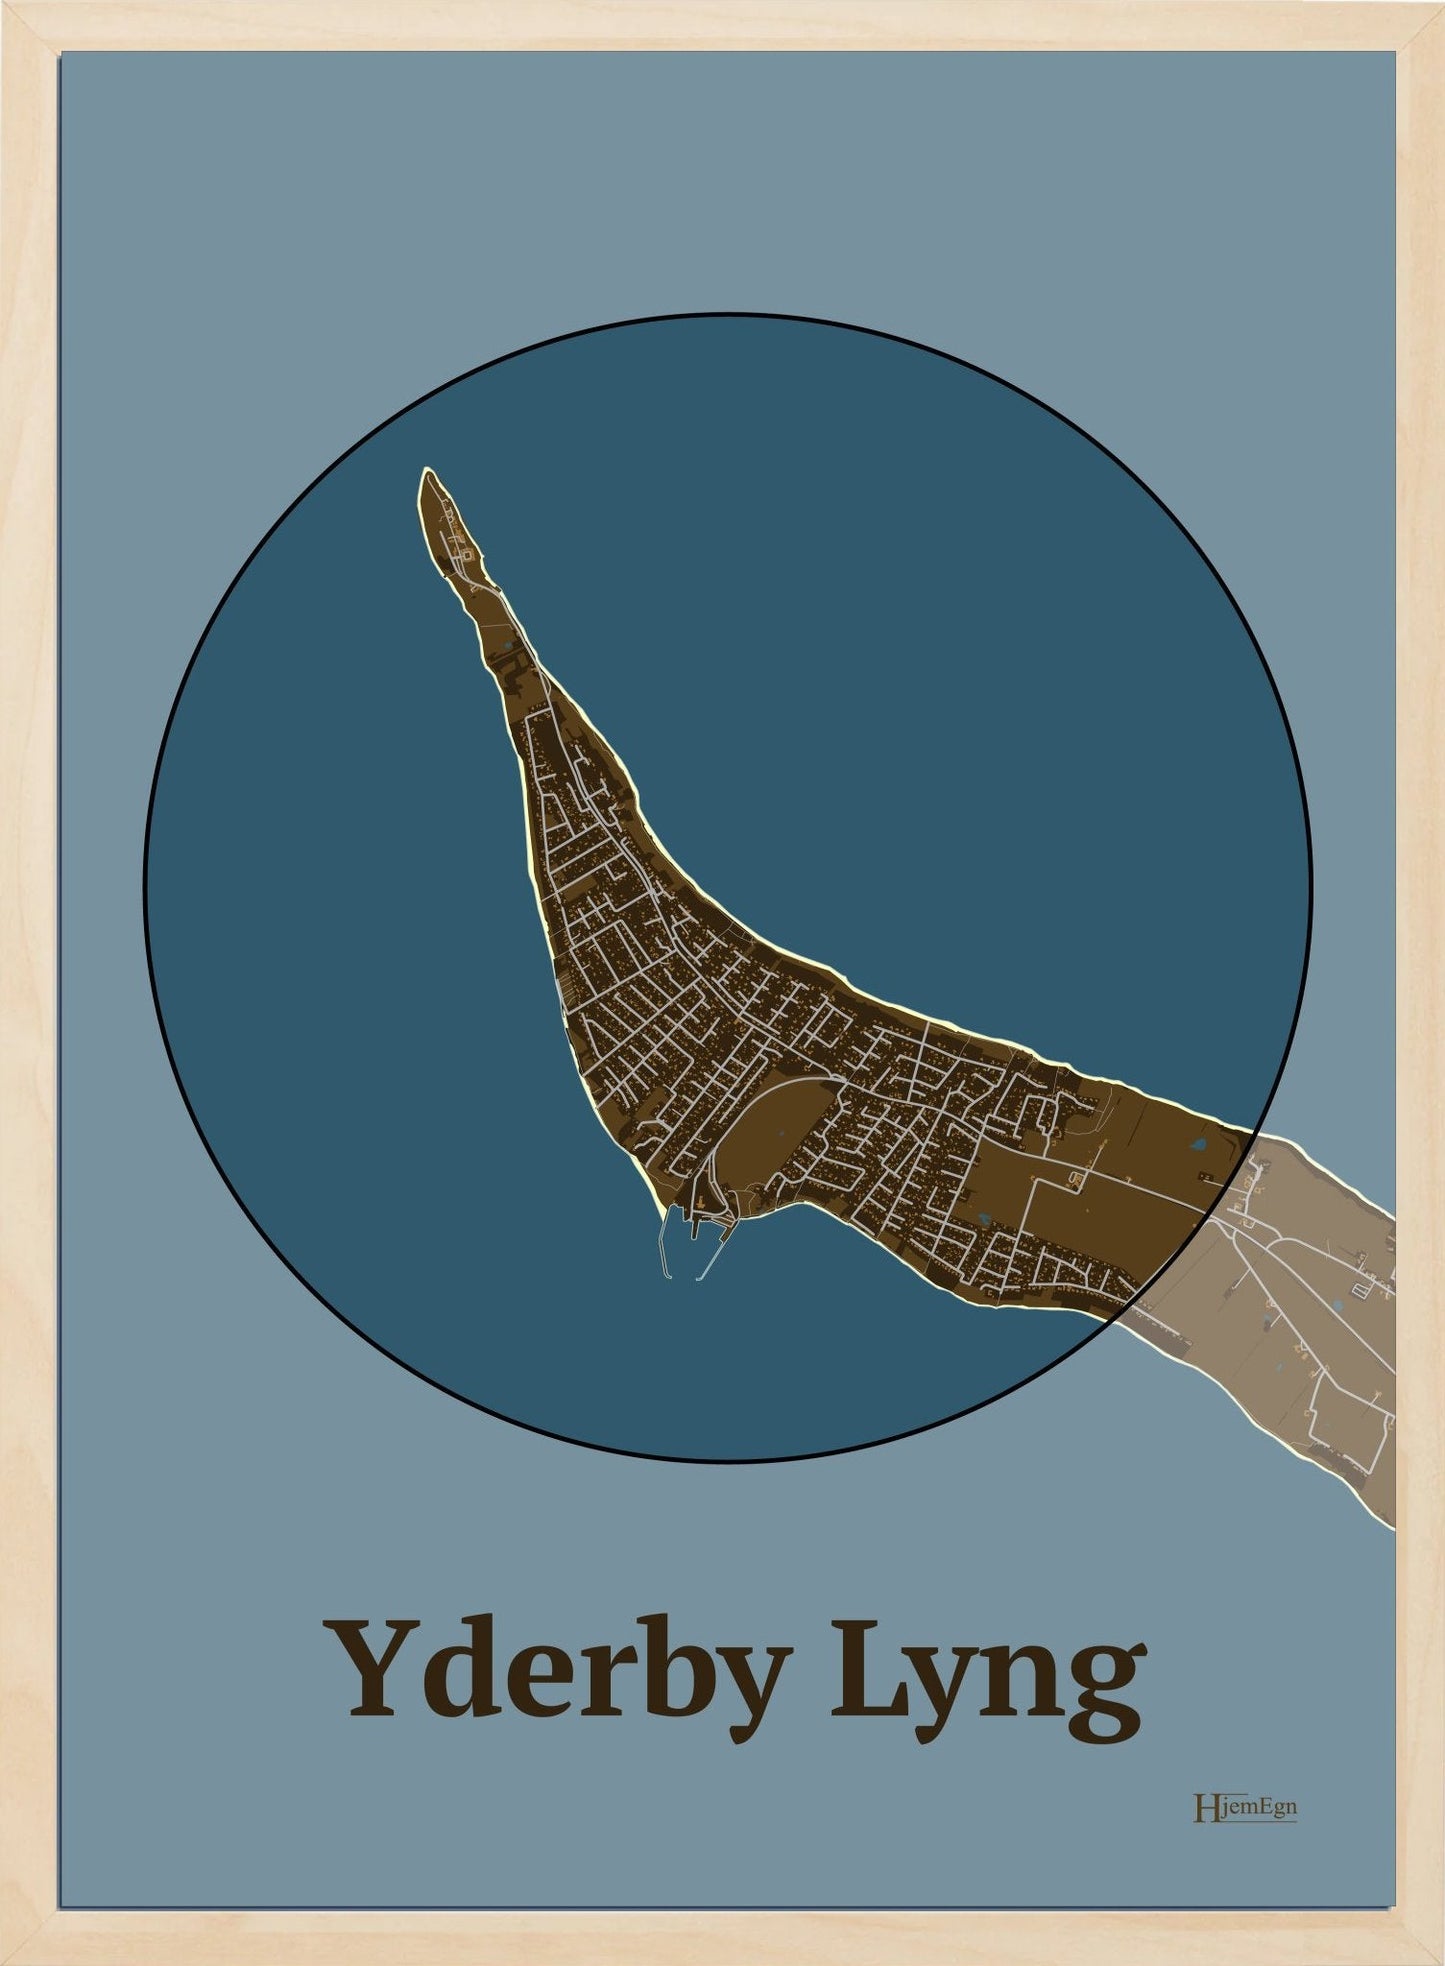 Yderby Lyng plakat i farve mørk brun og HjemEgn.dk design centrum. Design bykort for Yderby Lyng